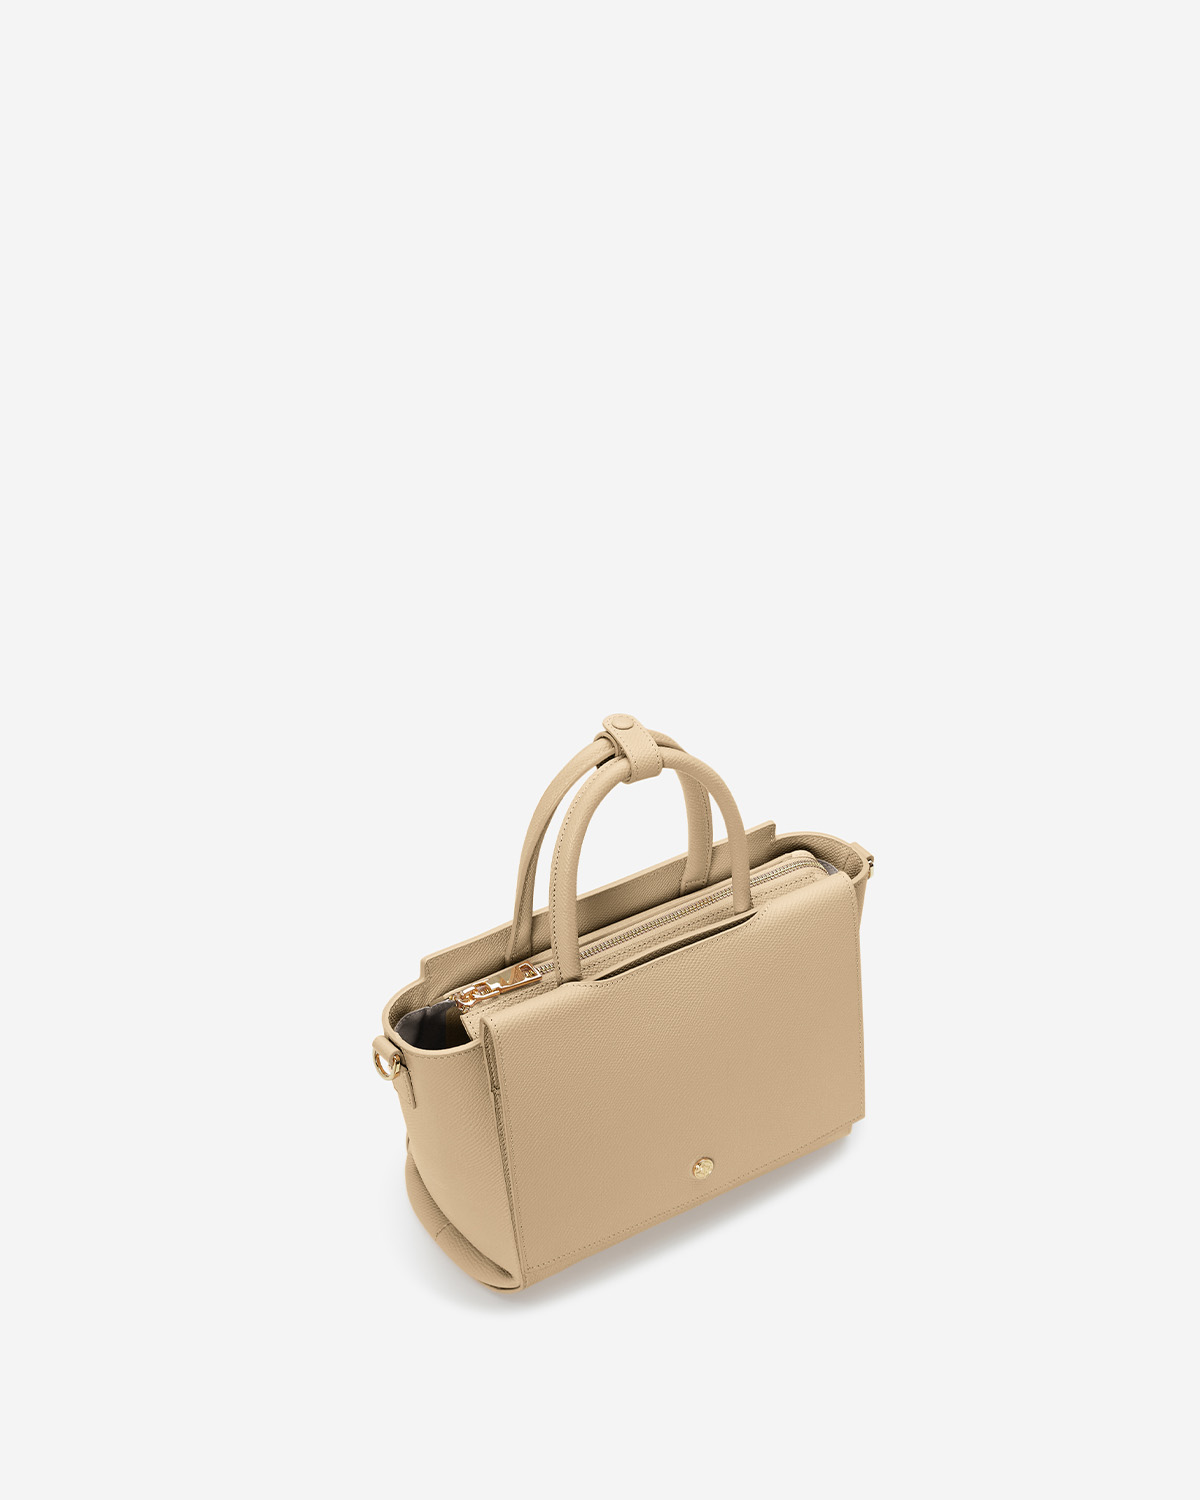 กระเป๋าถือหนังแท้ VERA Heidi Leather Handbag, ไซส์ 22 สี Sand